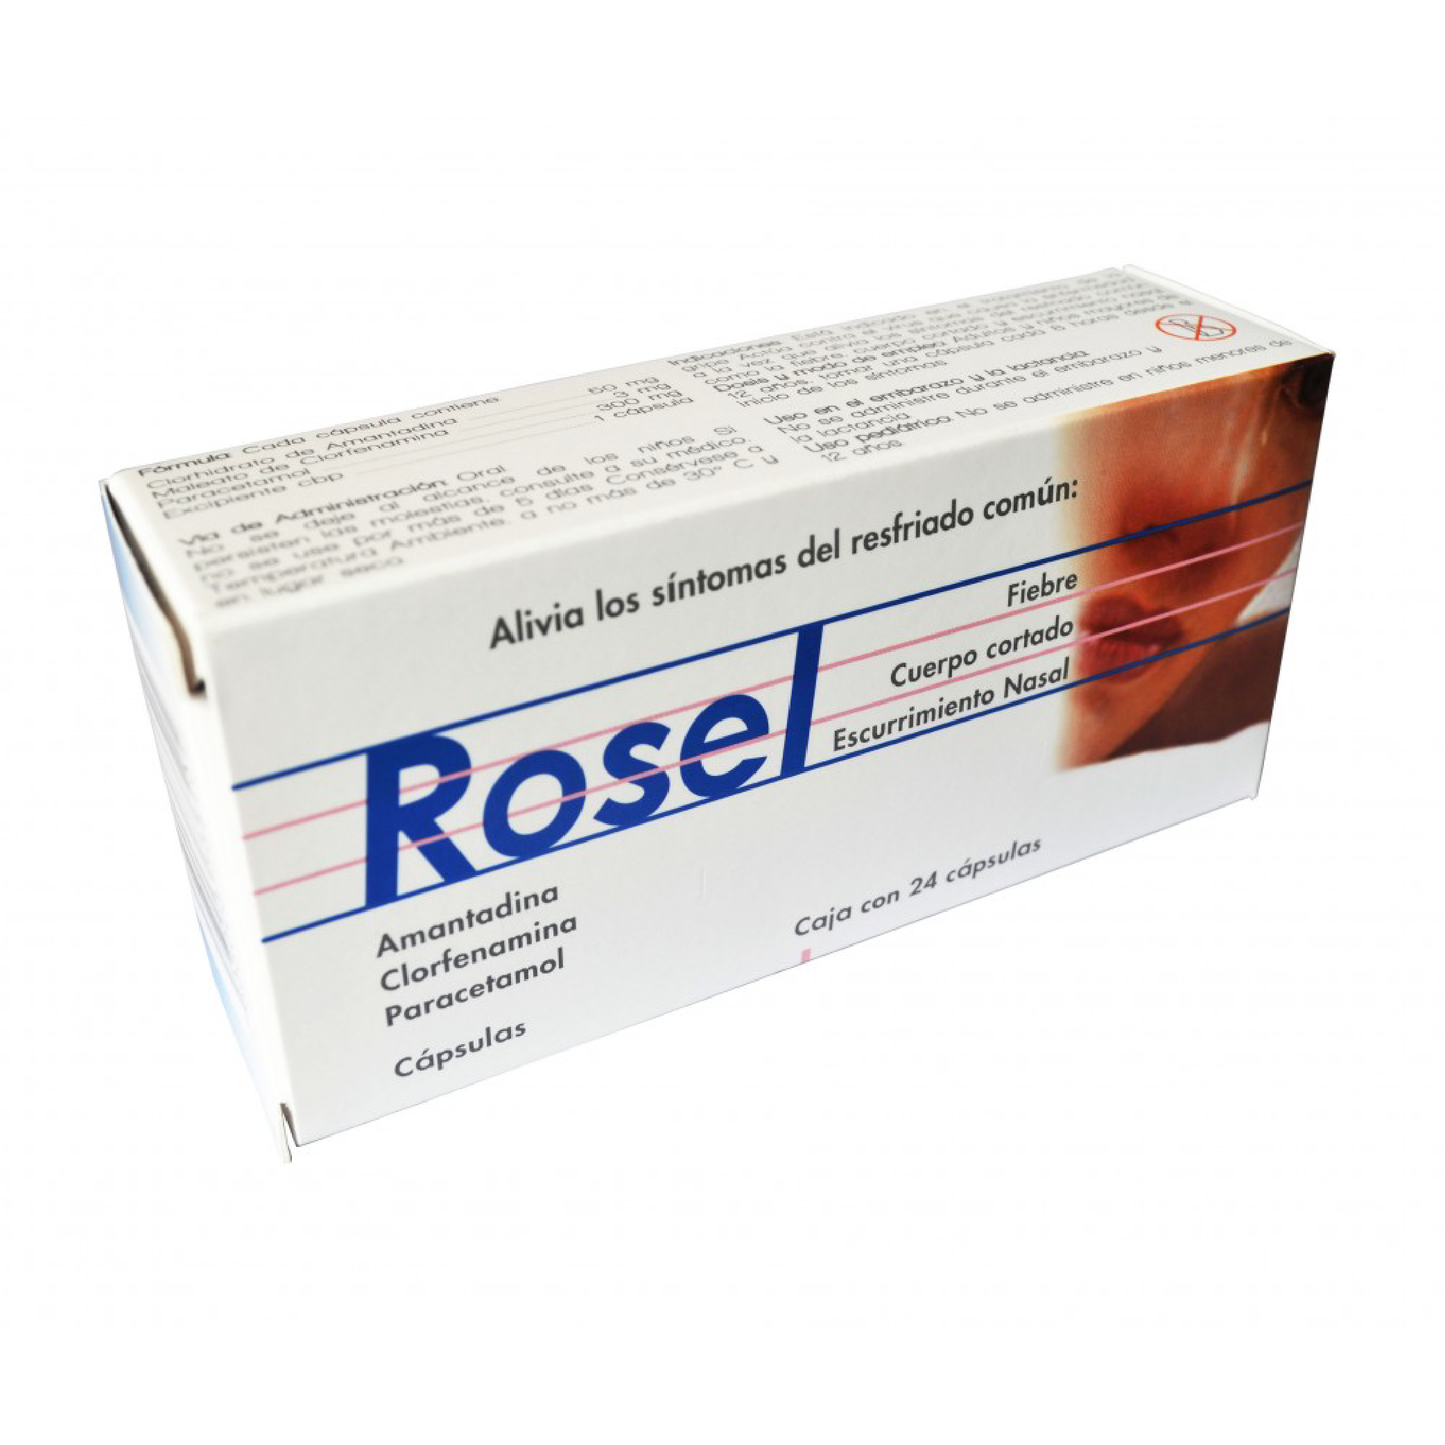 Rosel (Amantadina, Clorfenamina, Paracetamol) Caps 50mg/3mg/300mg Cja 24 caps